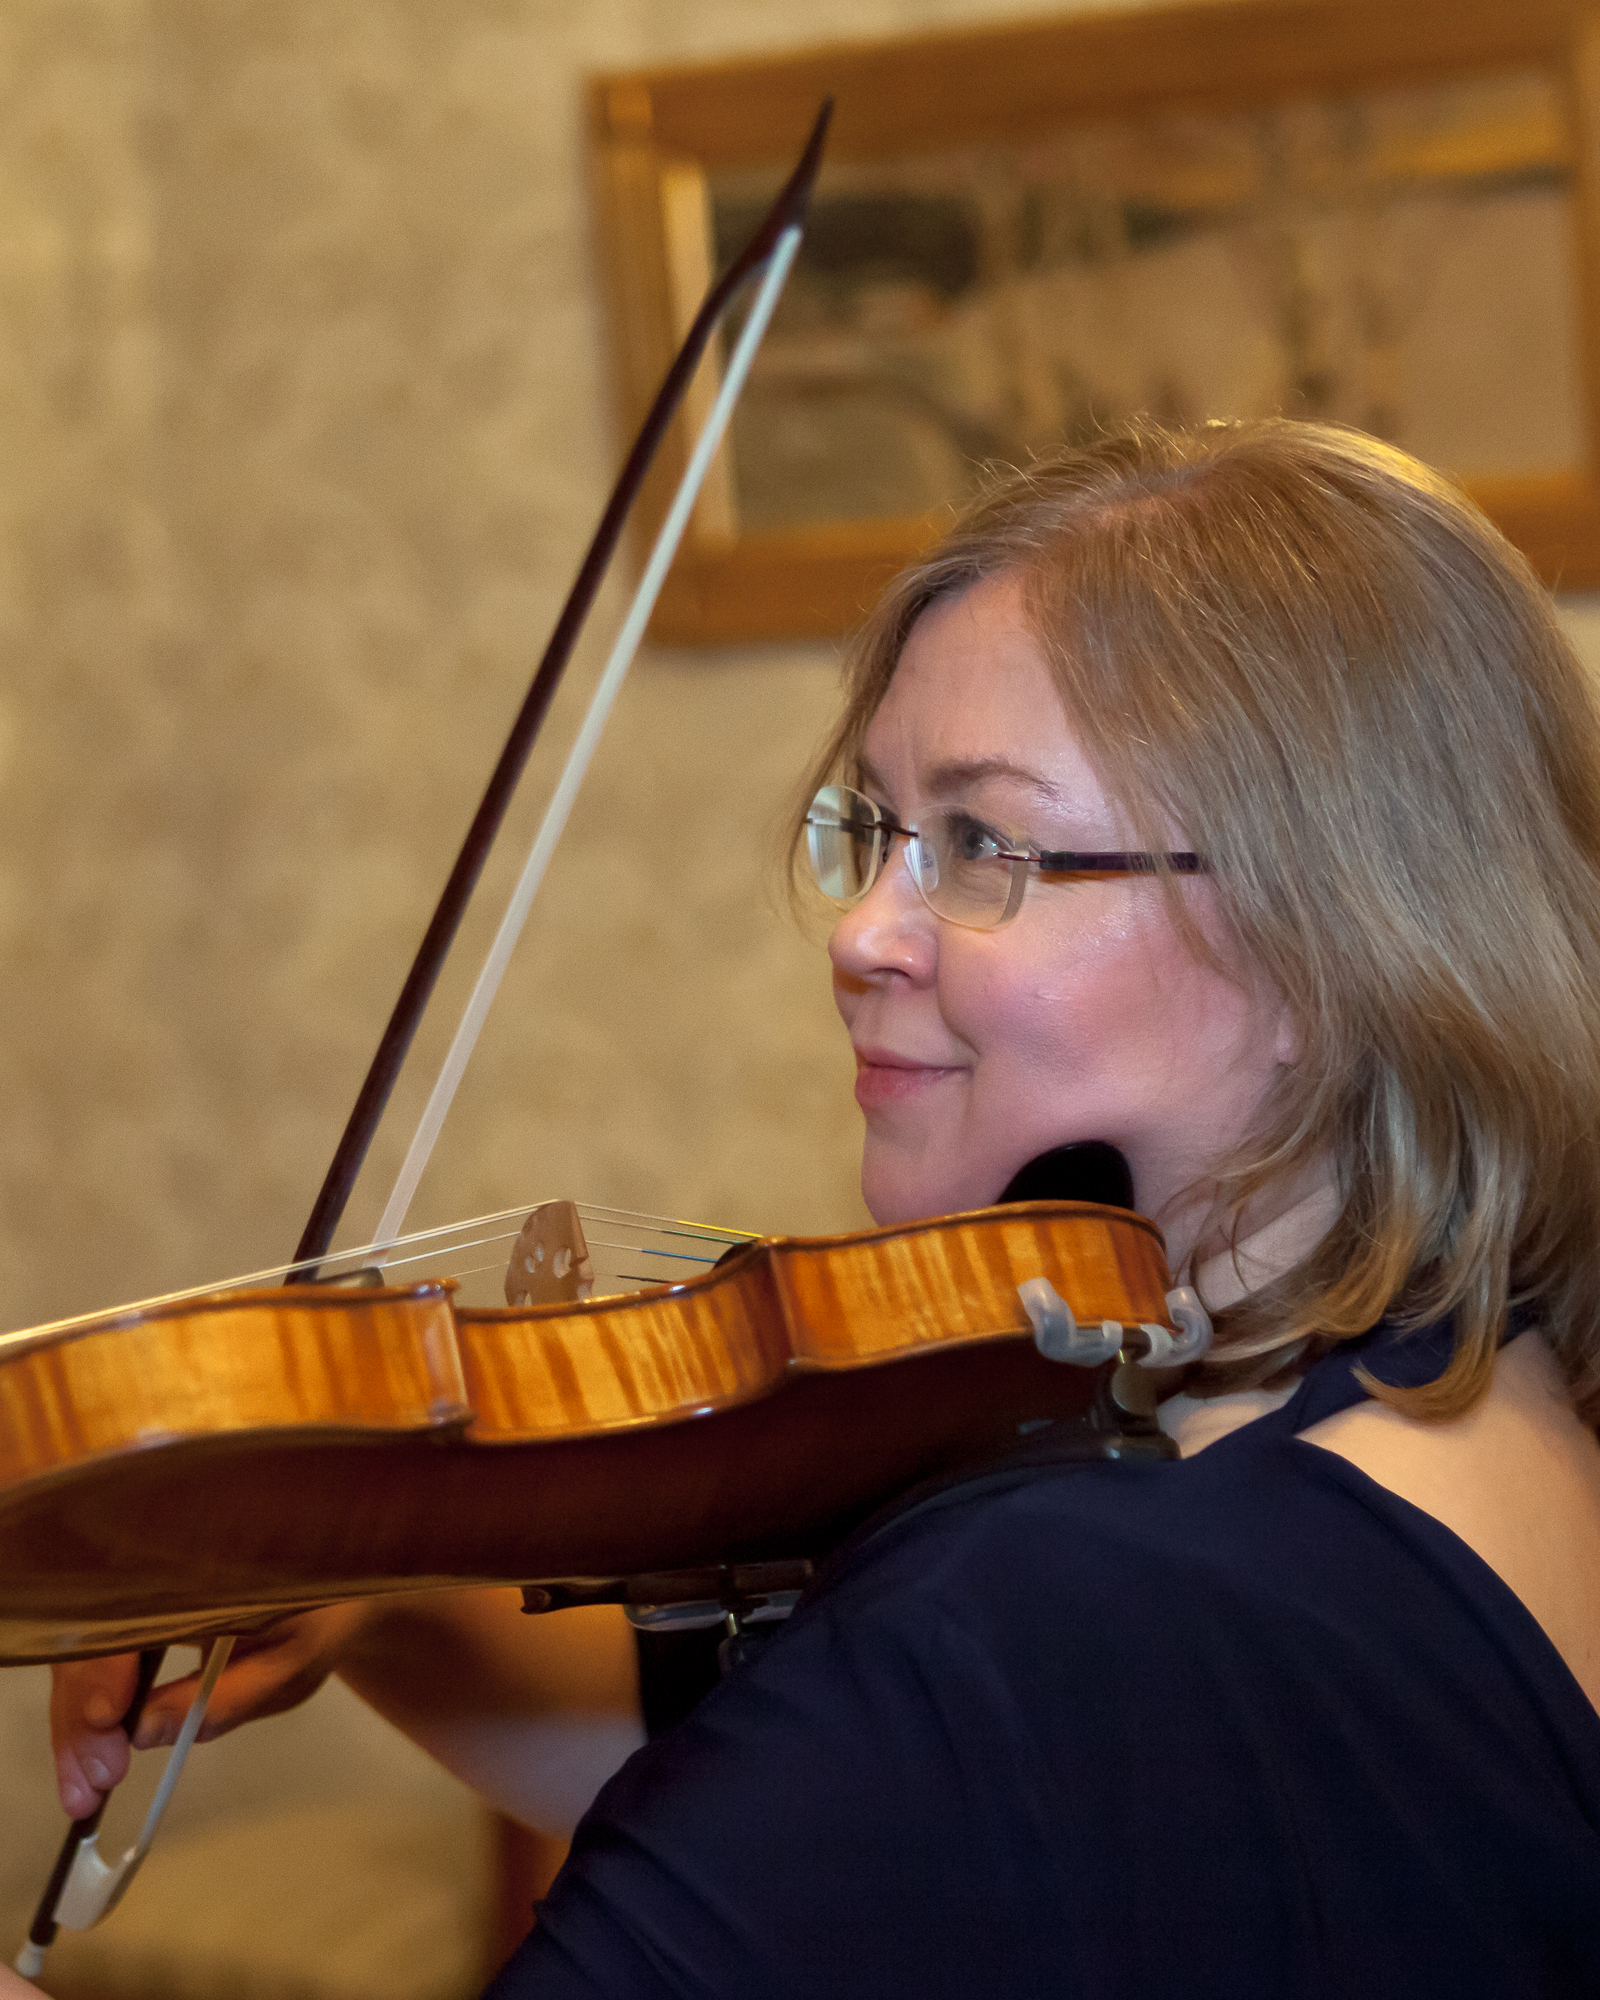 Tampereen Kamarimusiikkiseuran orkesteri solisteina viulistit Riikka Marttila ja Johanna Mattila esiintyy Kangasala-talossa toukokuussa 2020.